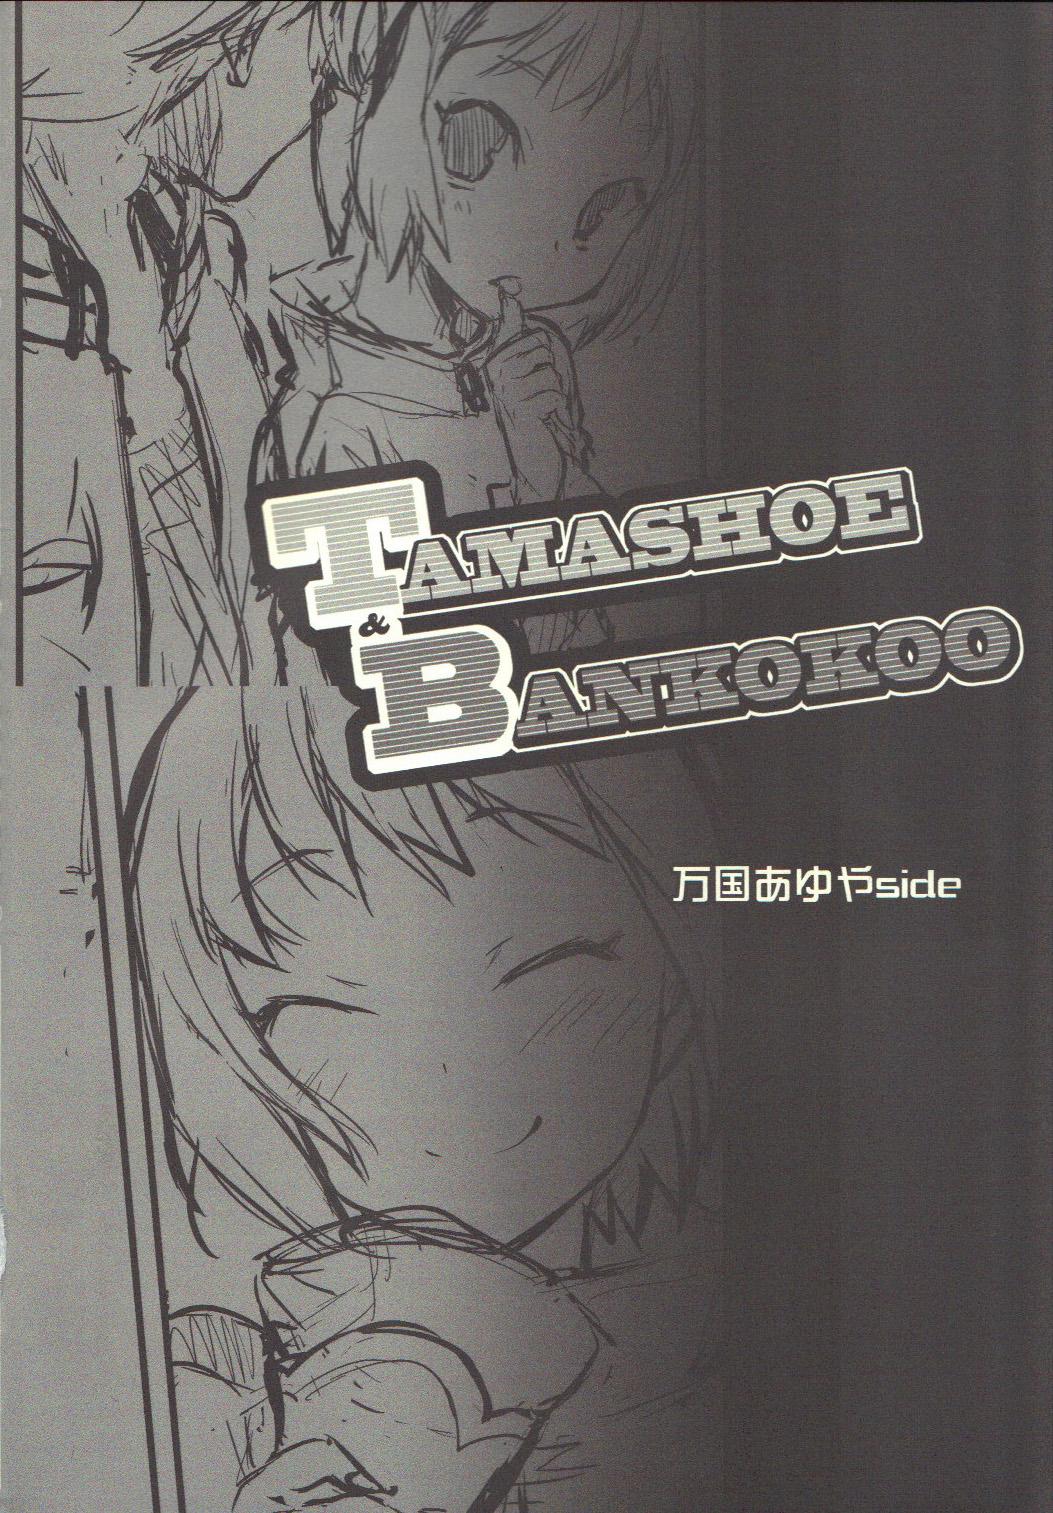 TAMASHOE&BANKOKOO 2